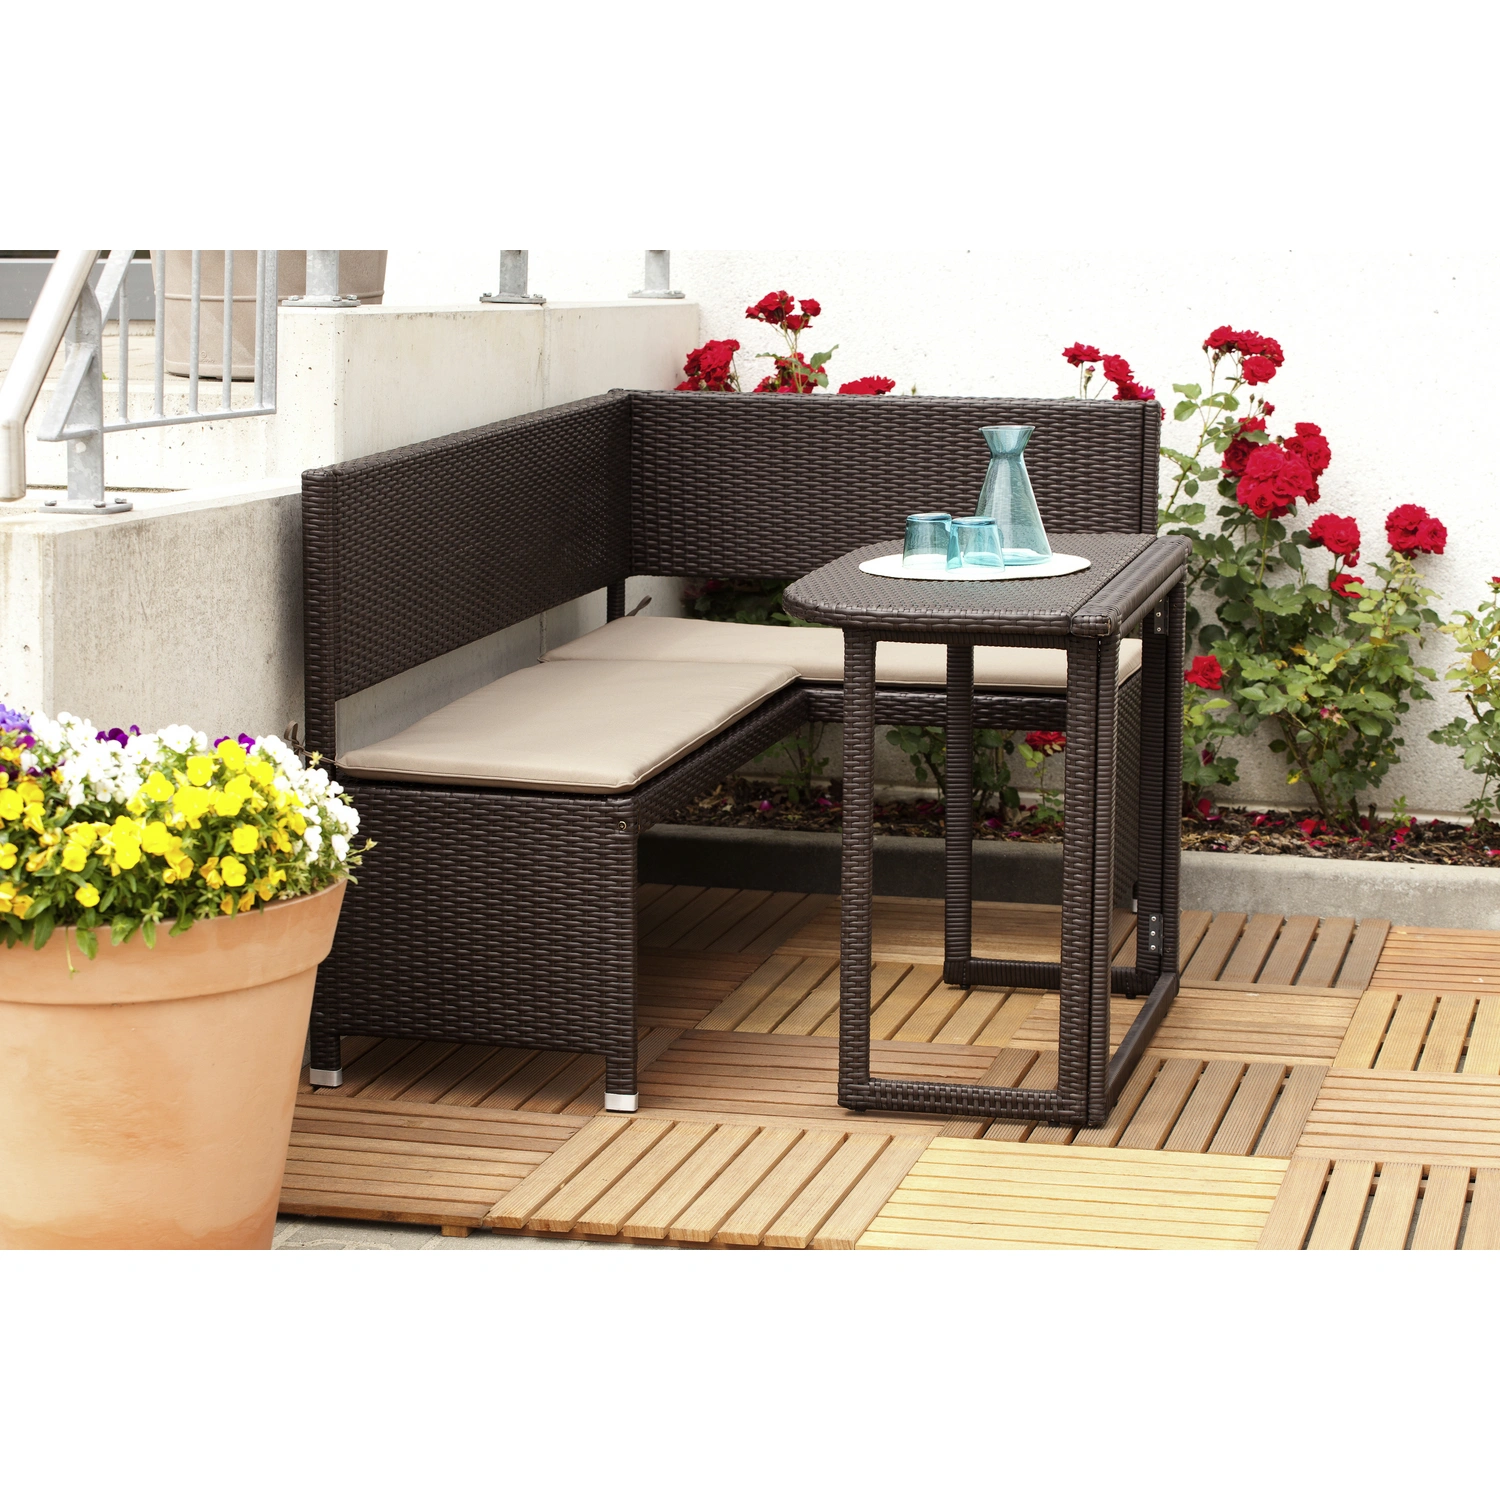 Gartenmöbelset, inkl. 3 Sitzplätze, Auflagen MERXX Stahl/Kunststoff,